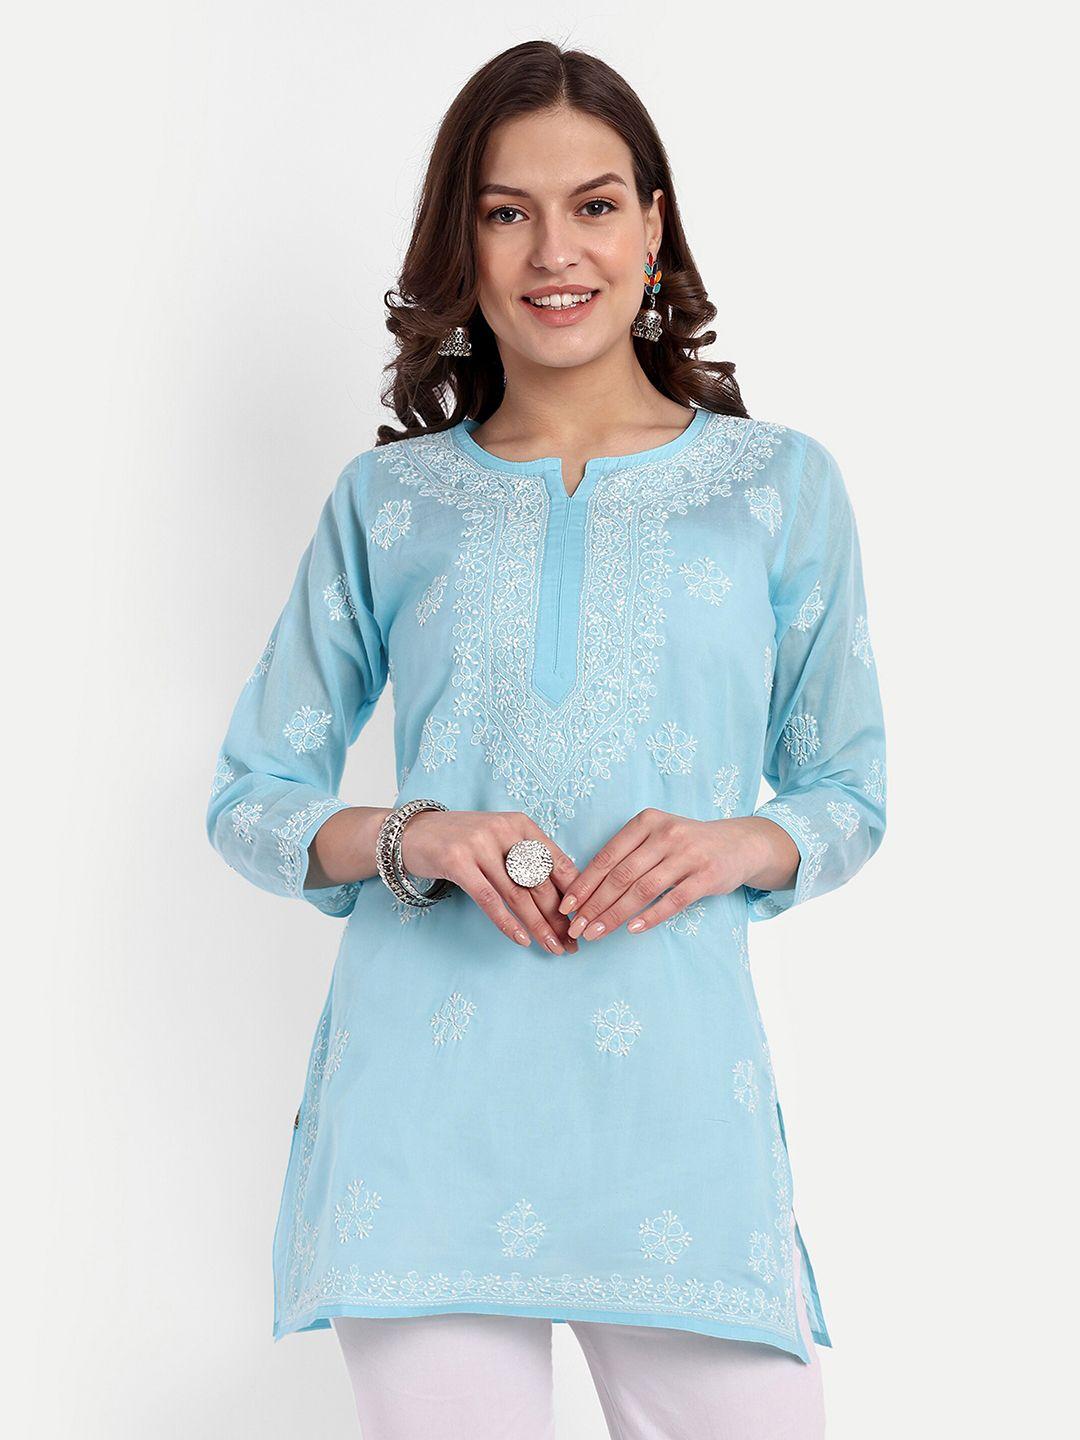 ada blue & white ethnic motifs embroidered thread work pure cotton thread work kurti